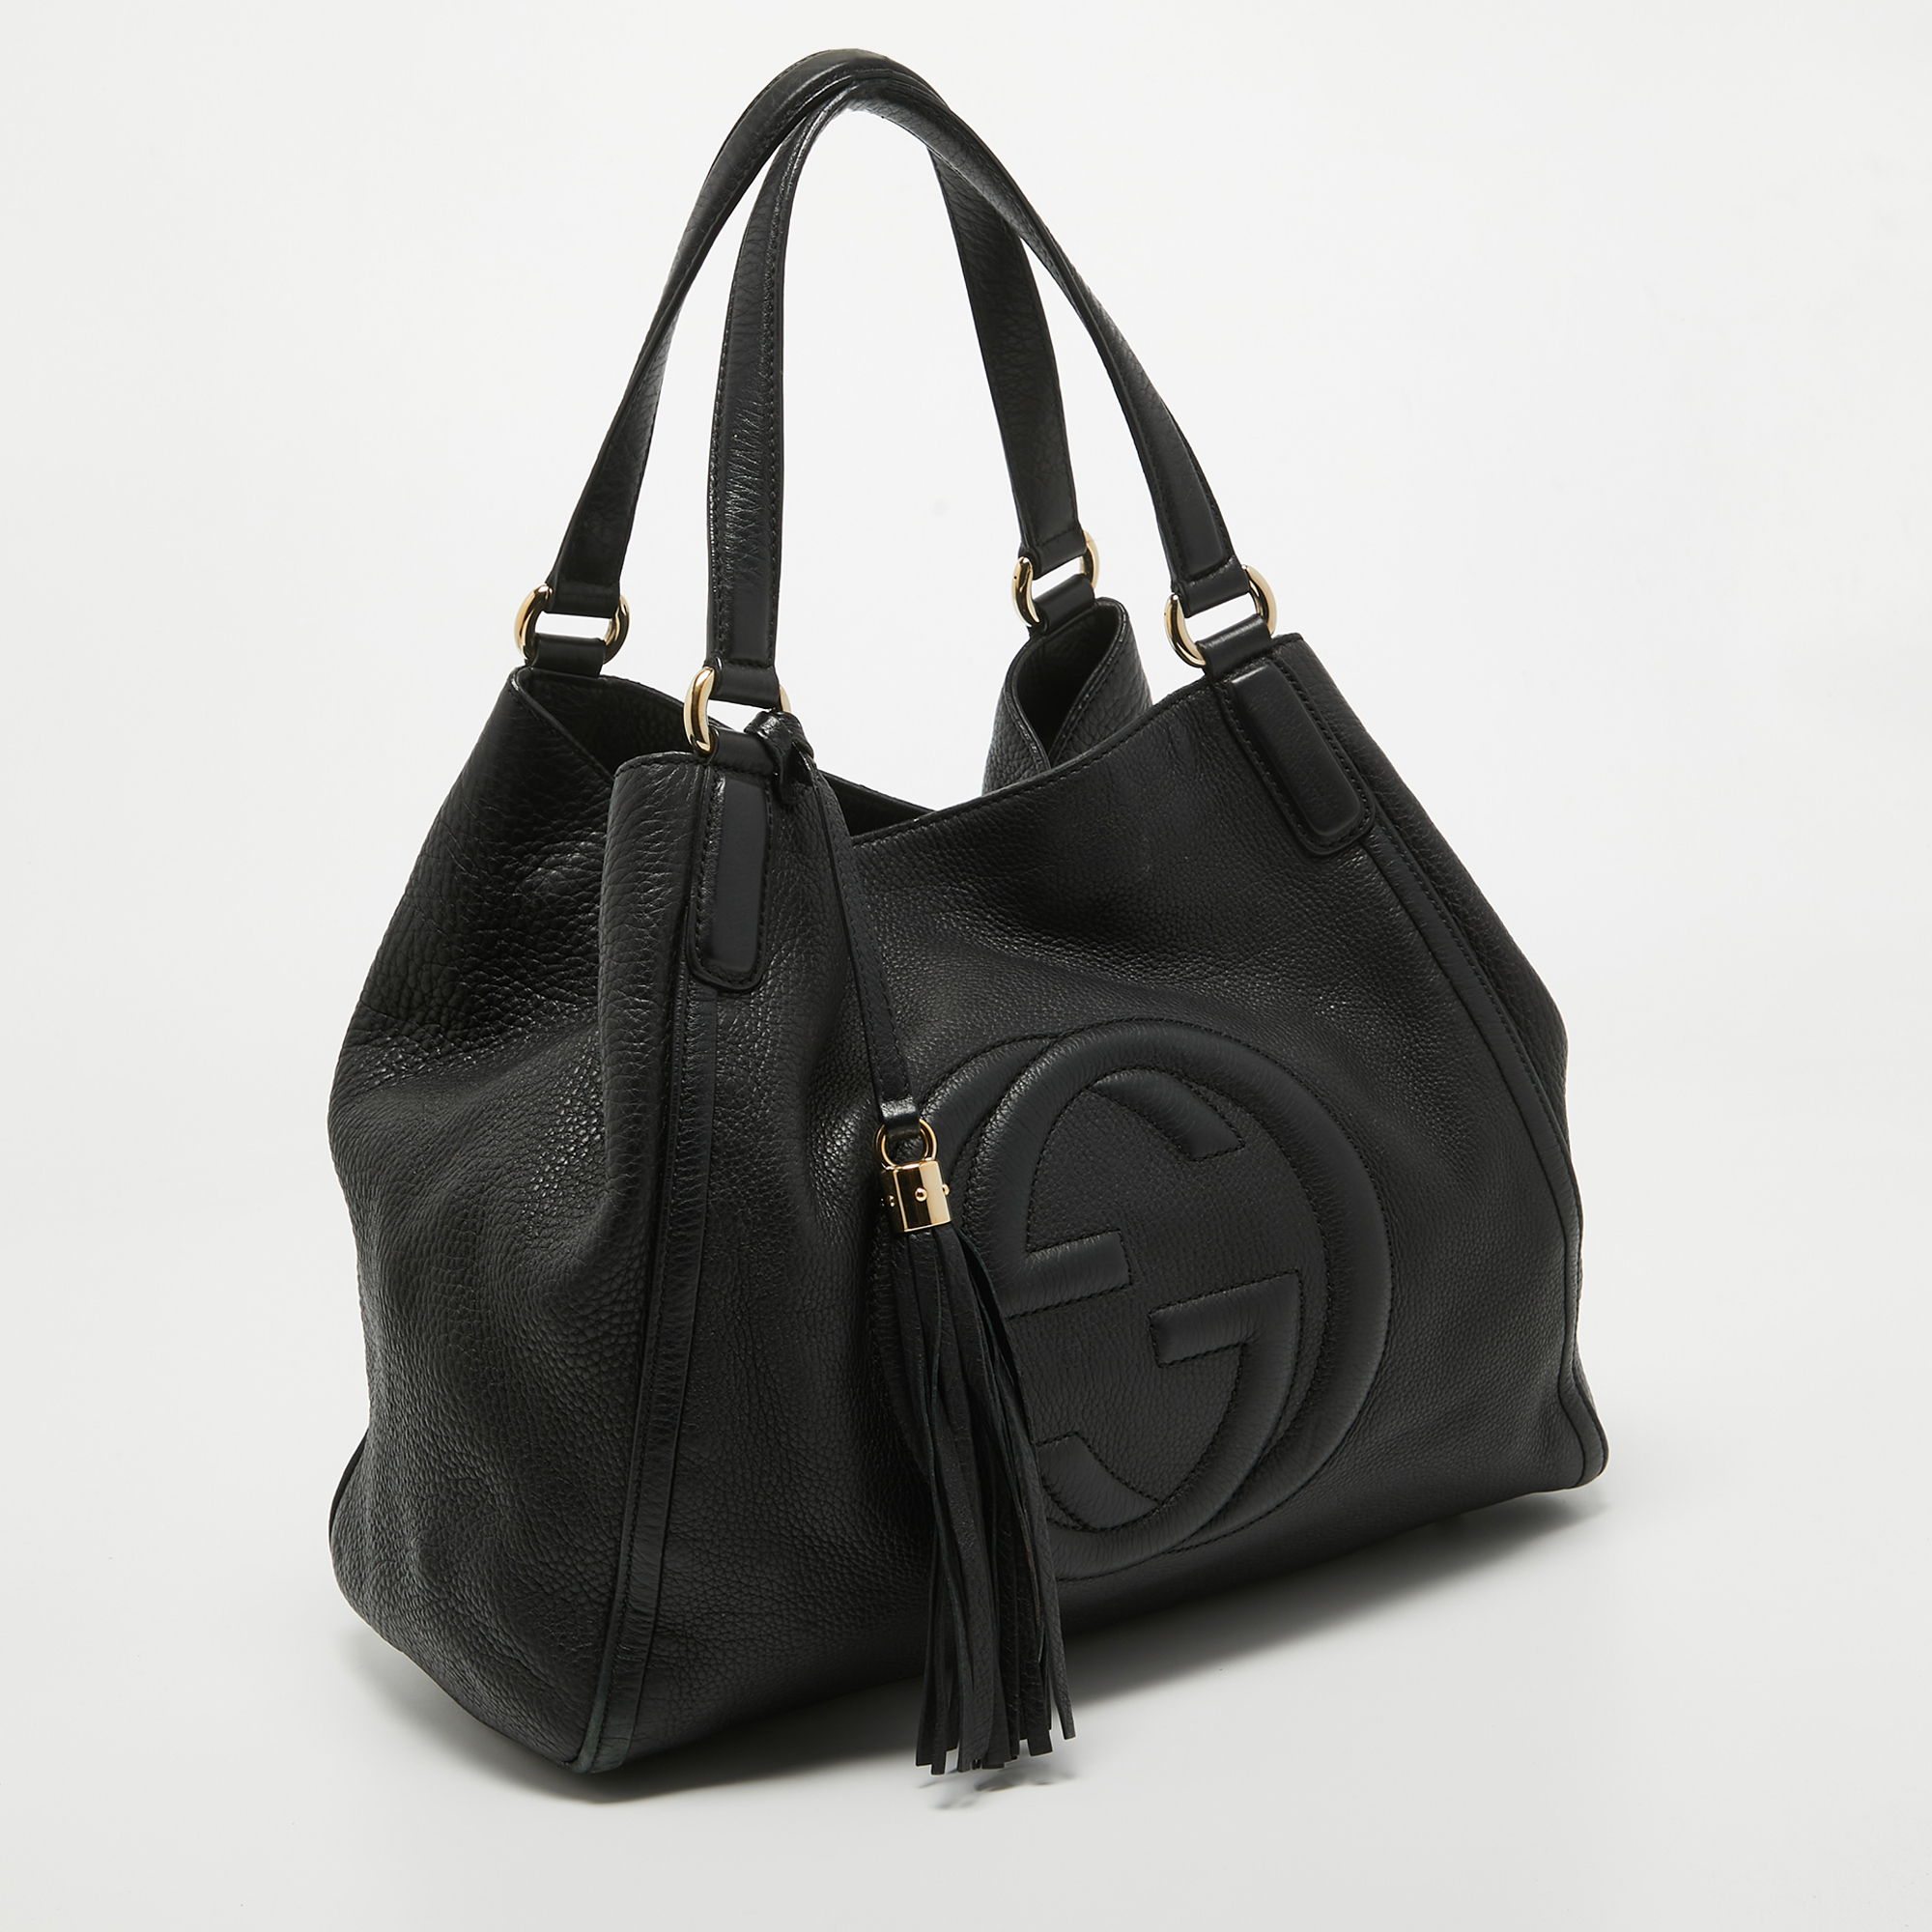 Gucci Black Leather Medium Soho Shoulder Bag